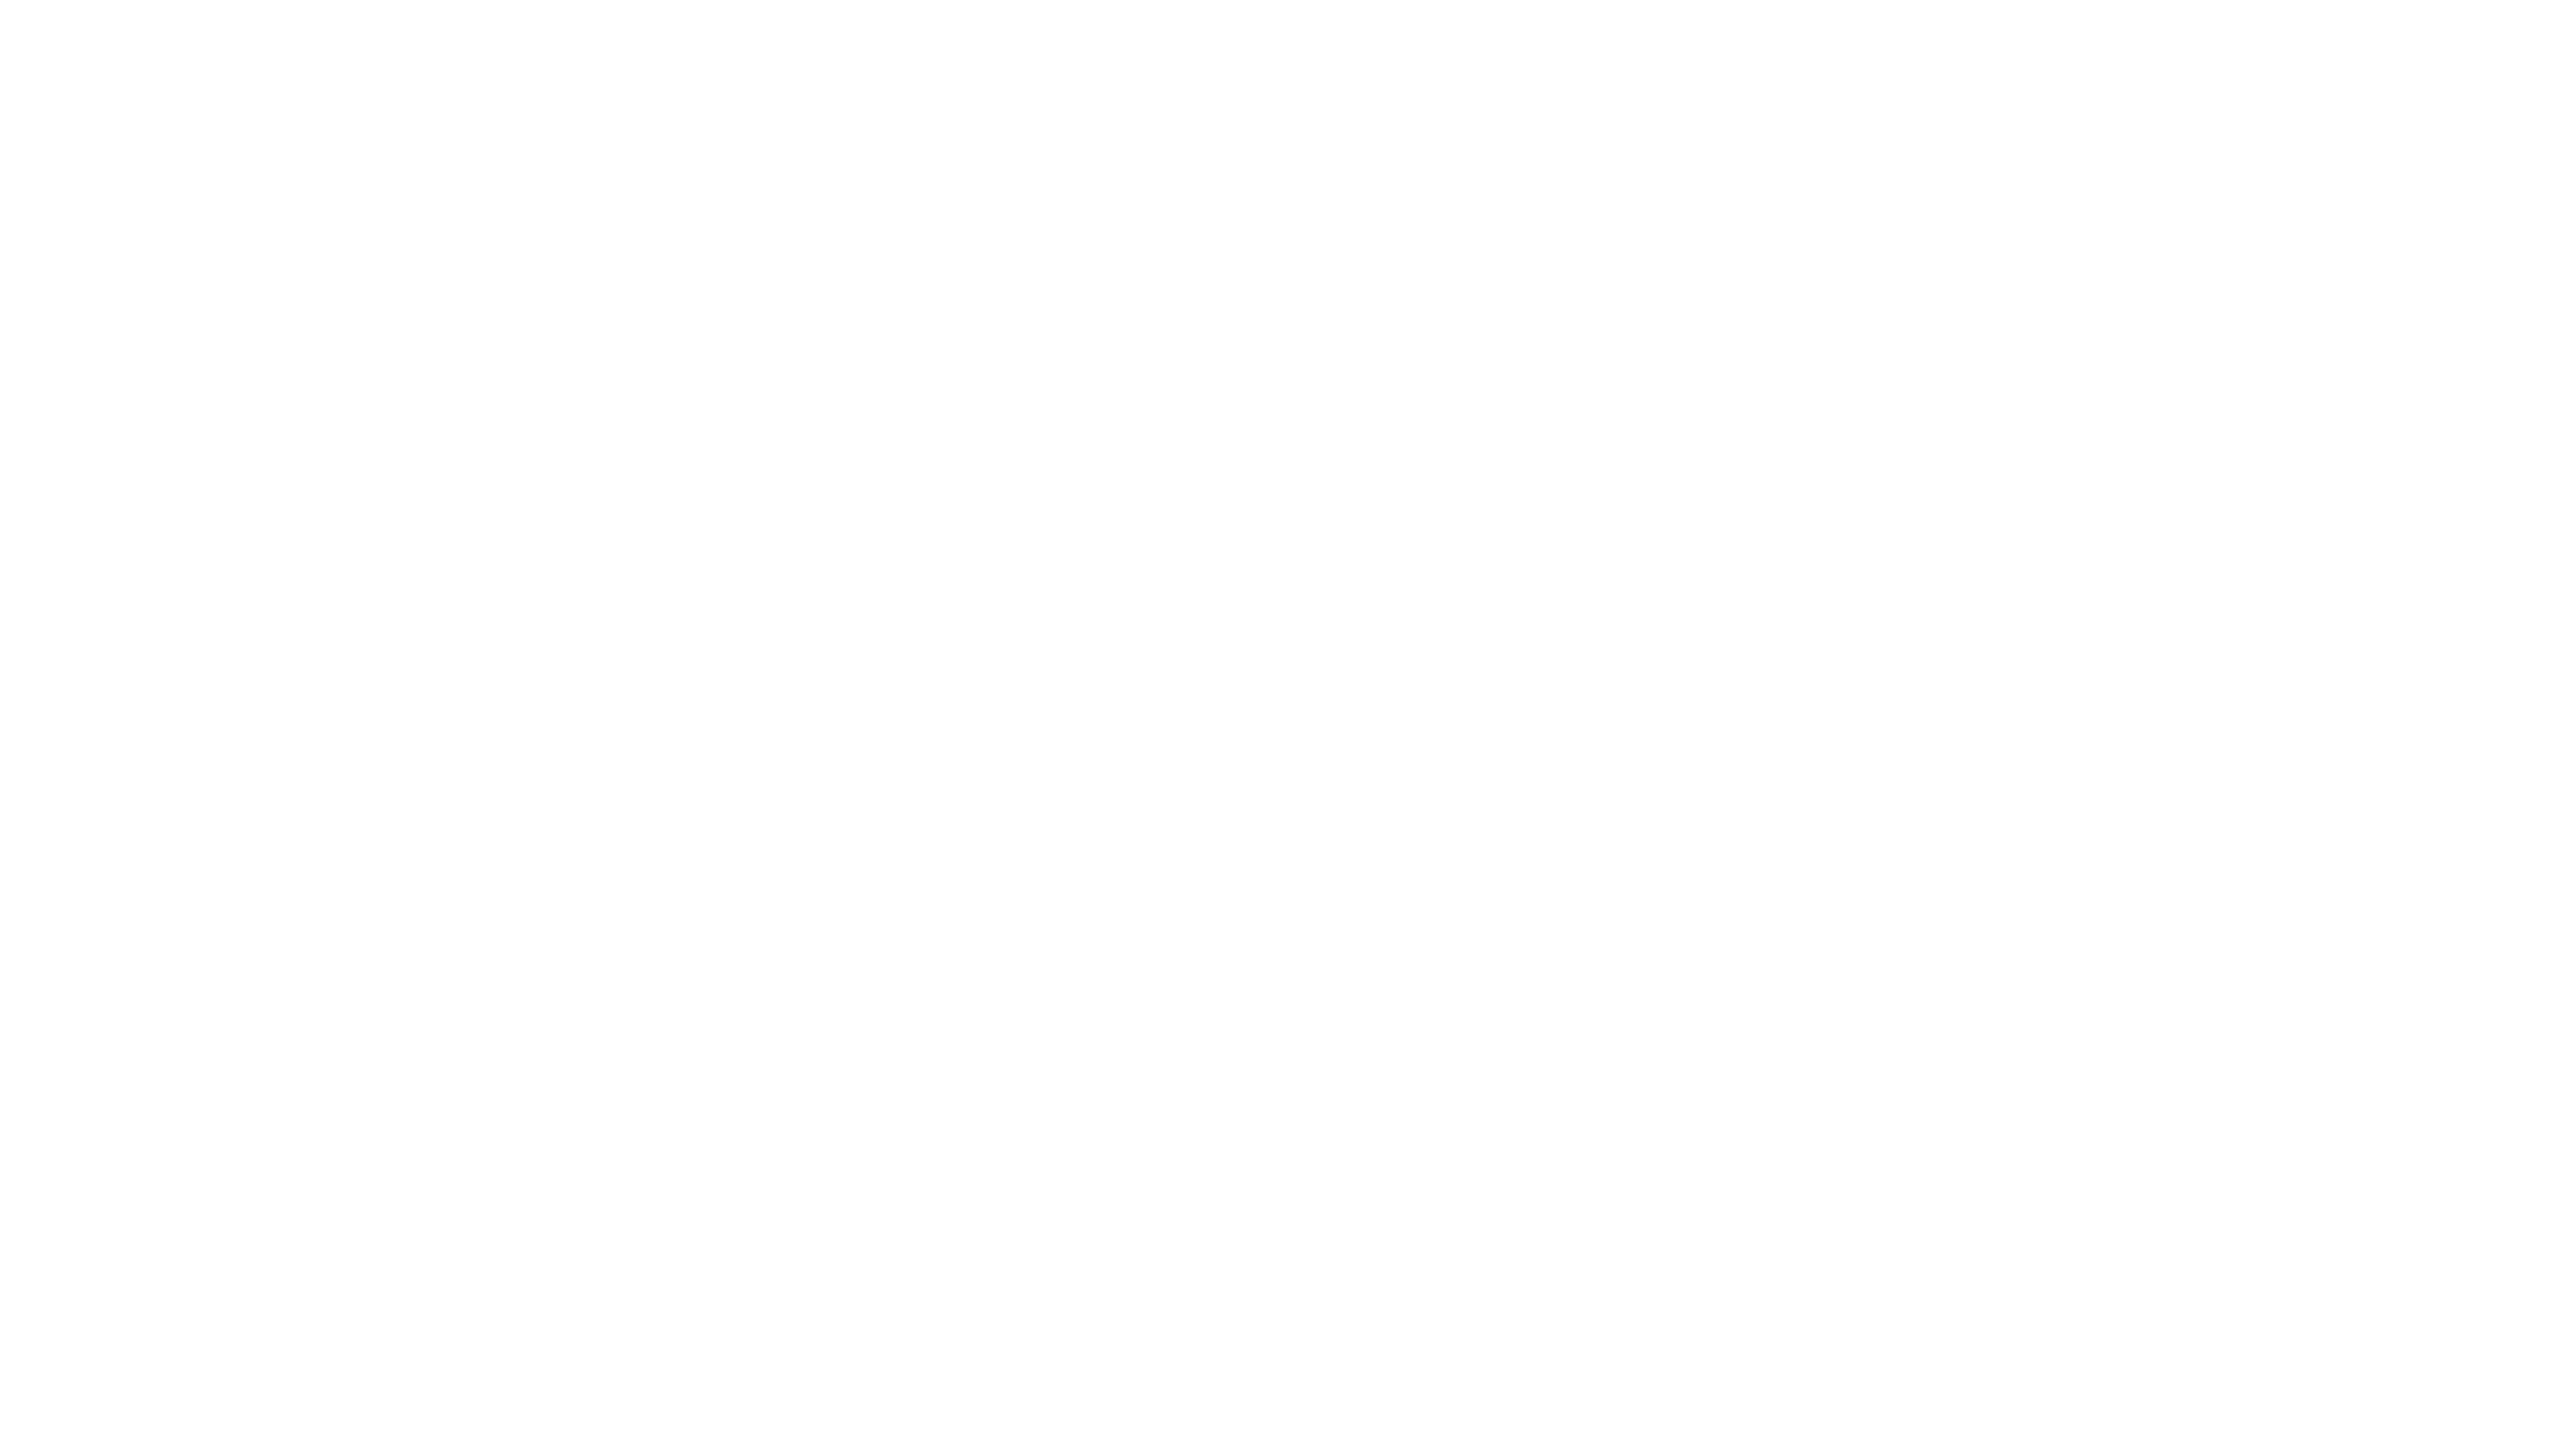 Graphic: Unilab logo